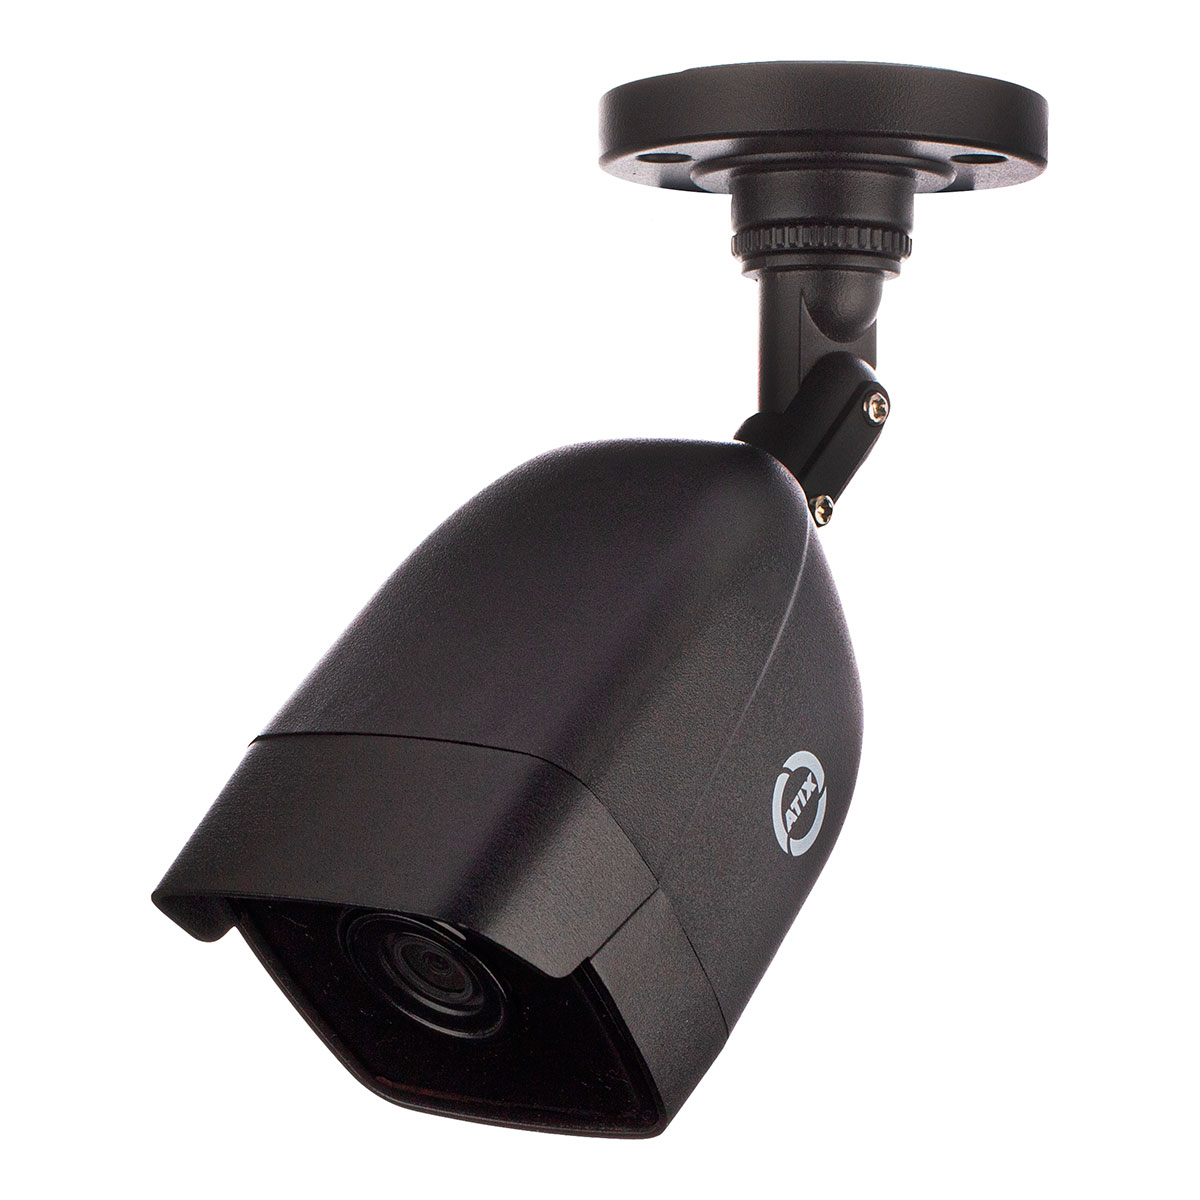 Детальное изображение товара "IP-видеокамера цилиндрическая уличная ATIX ATH-NC-1B2M-2.8 (2B) Black" из каталога оборудования для видеонаблюдения